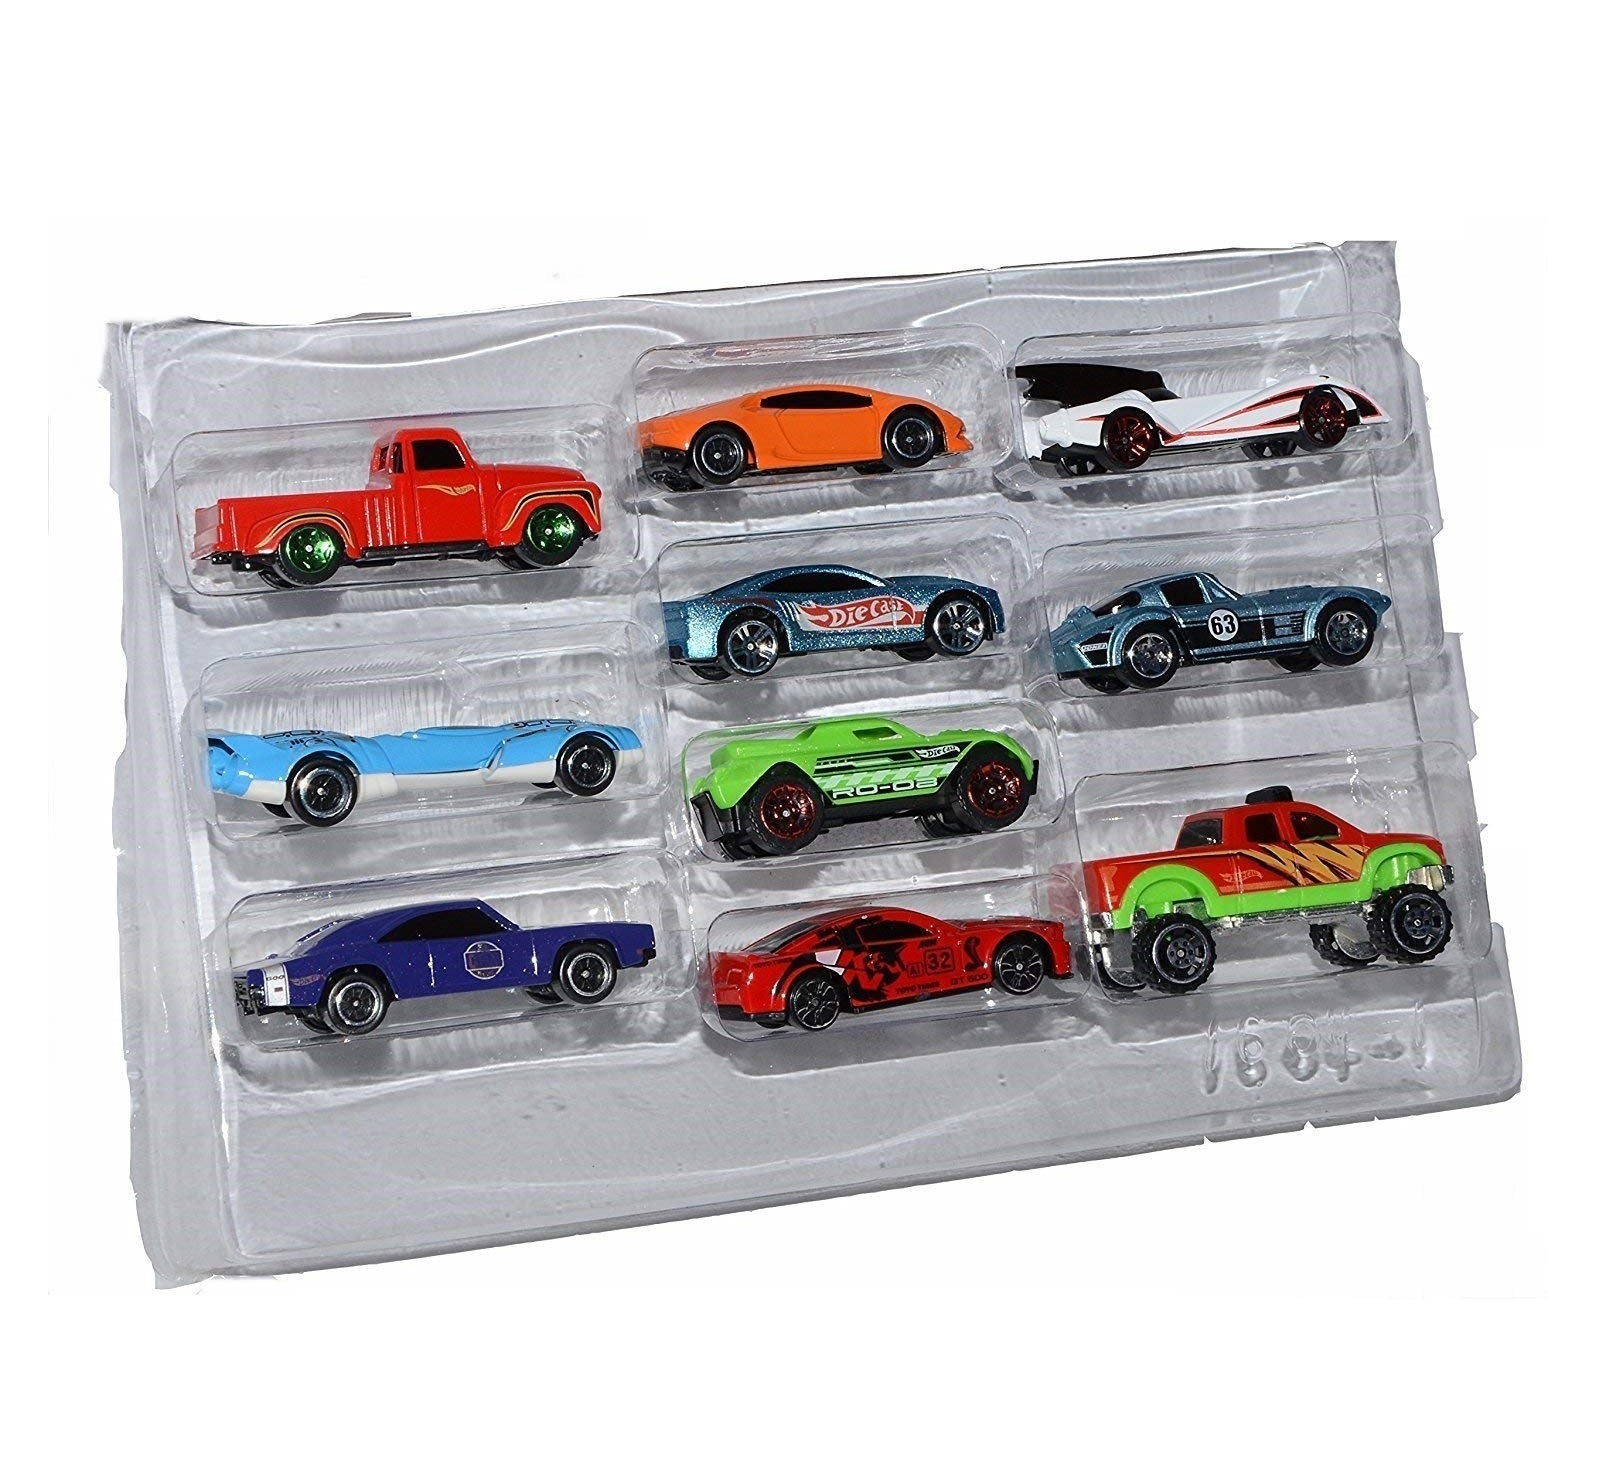 Die Cast Metal Cars Multi Color Models Pack of 10